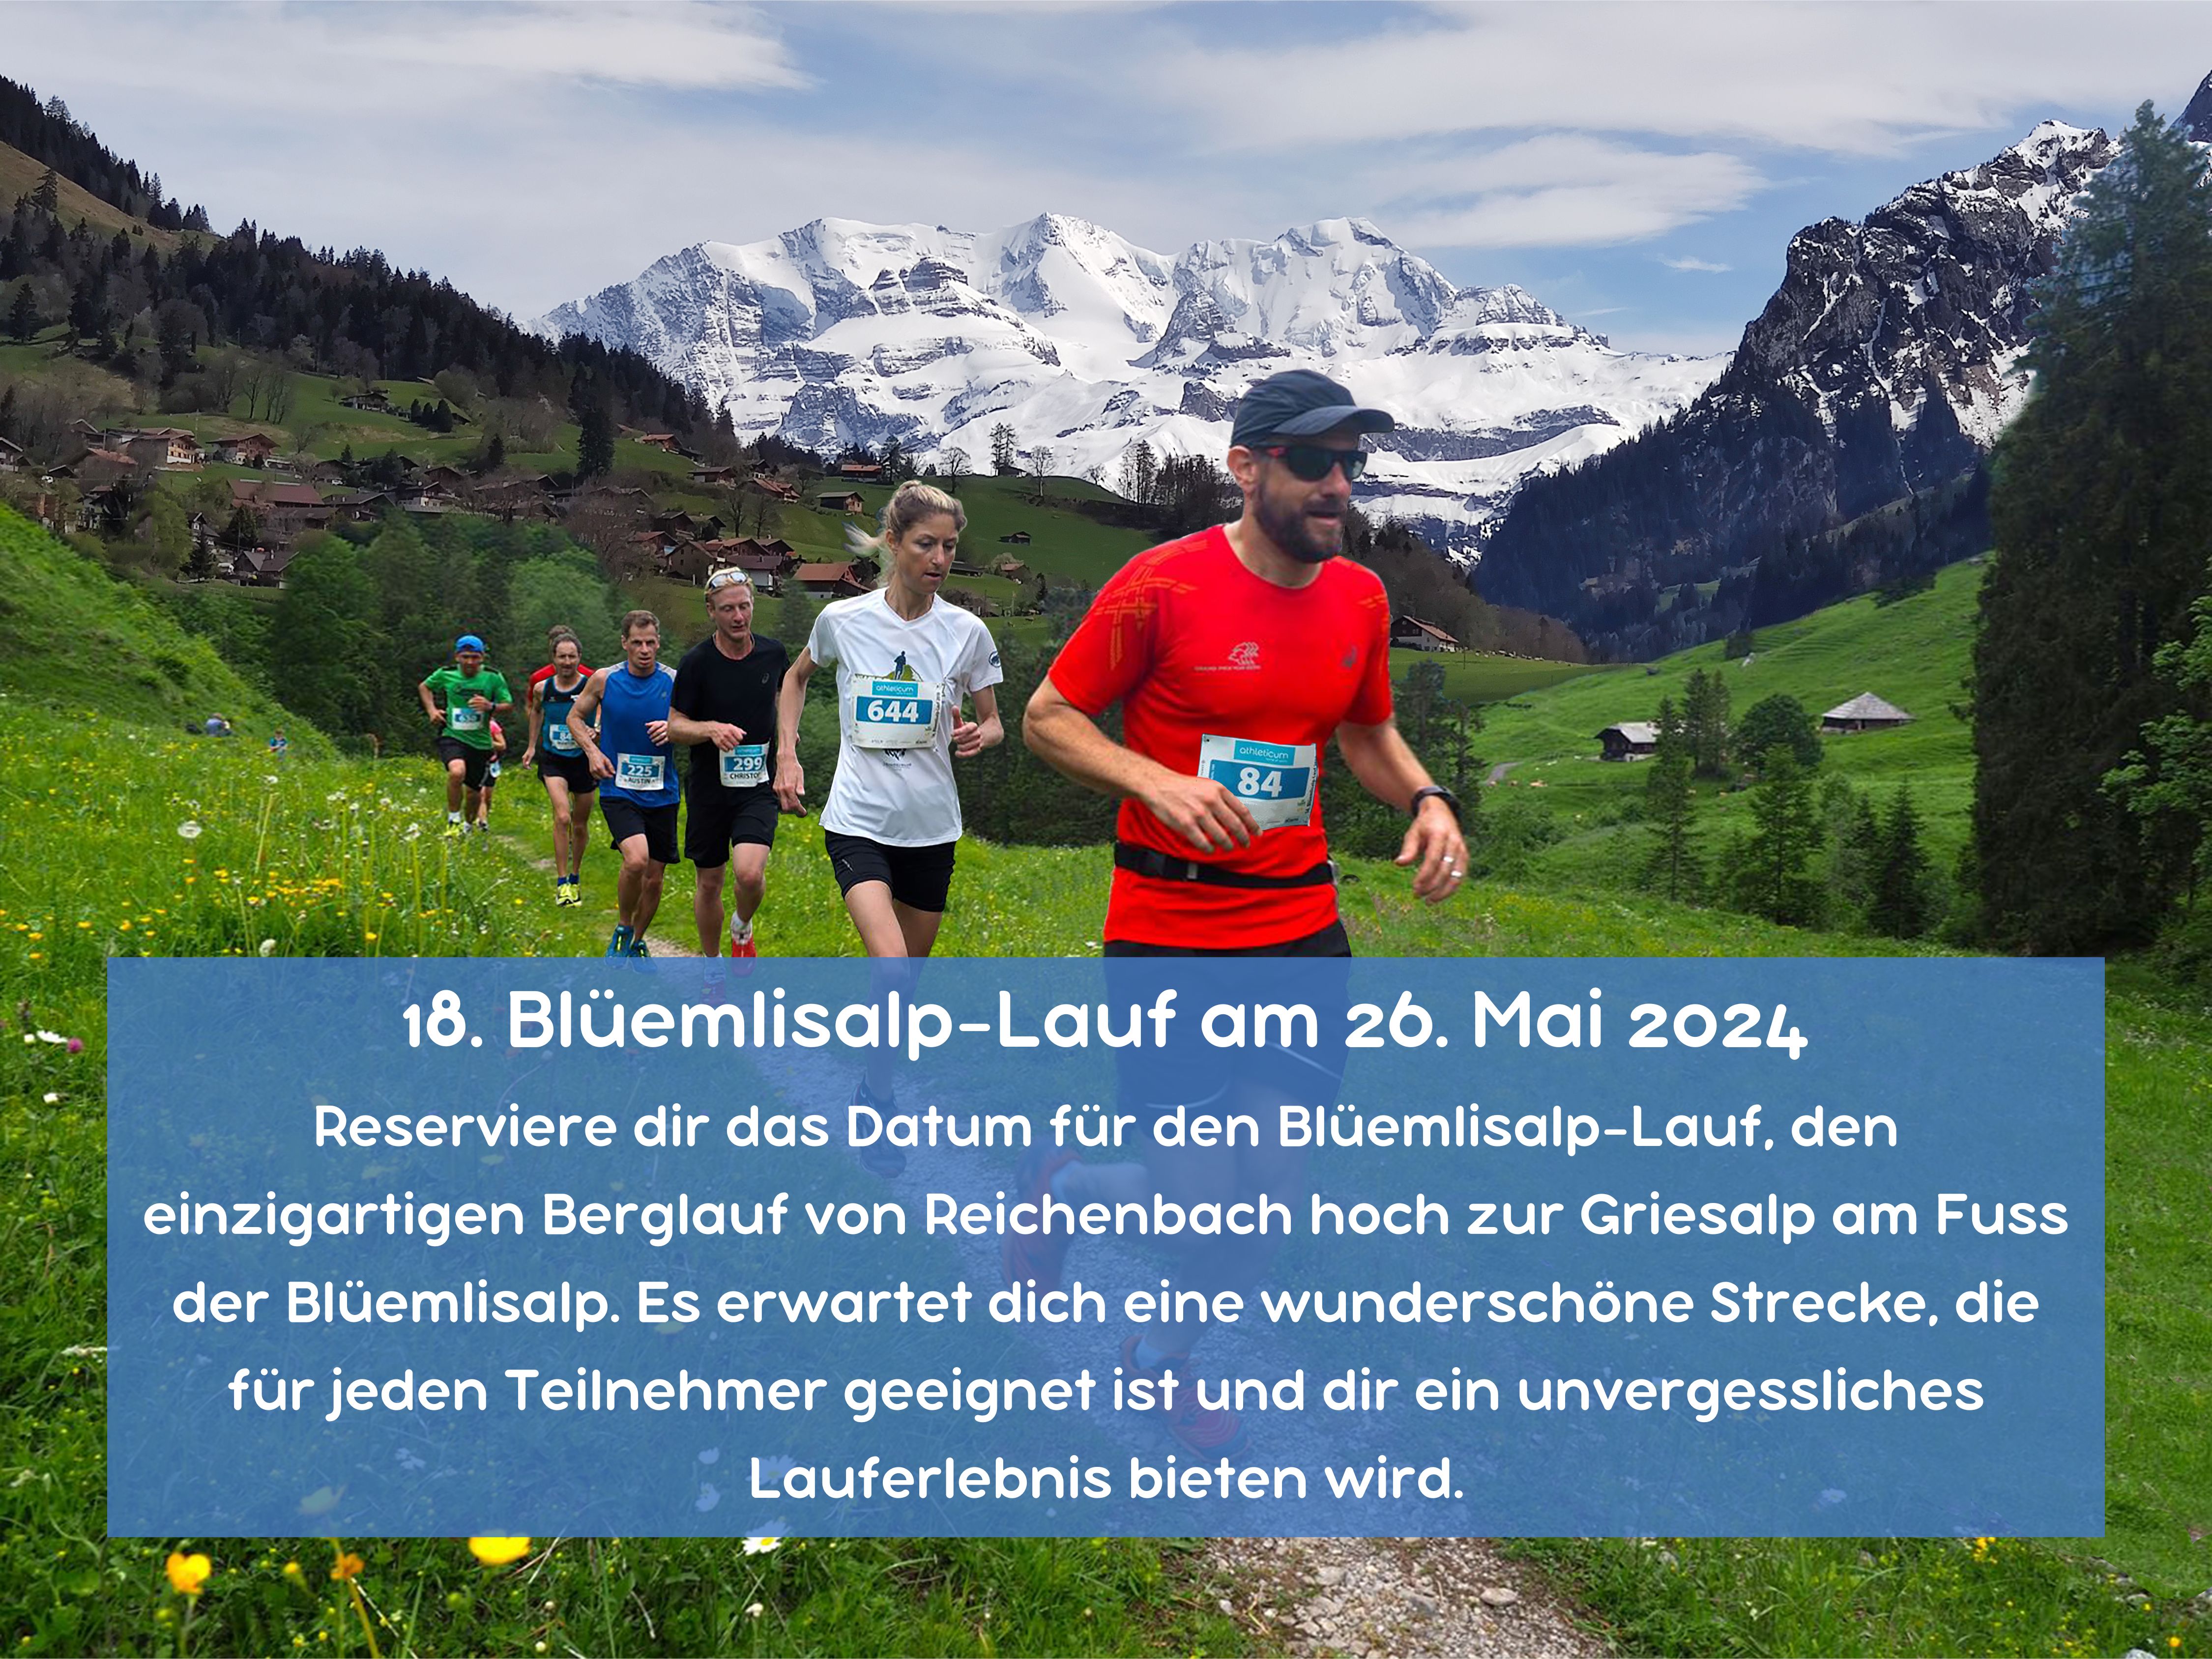 18. Blüemlisalp Lauf am 26. Mai 2024 Reserviere dir das Datum für den Blüemlisalp Lauf den einzigartigen Berglauf von Reichenbach hoch zur Griesalp am Fuss der Blüemlisalp. Es erwartet dich eine wunderschöne Strecke